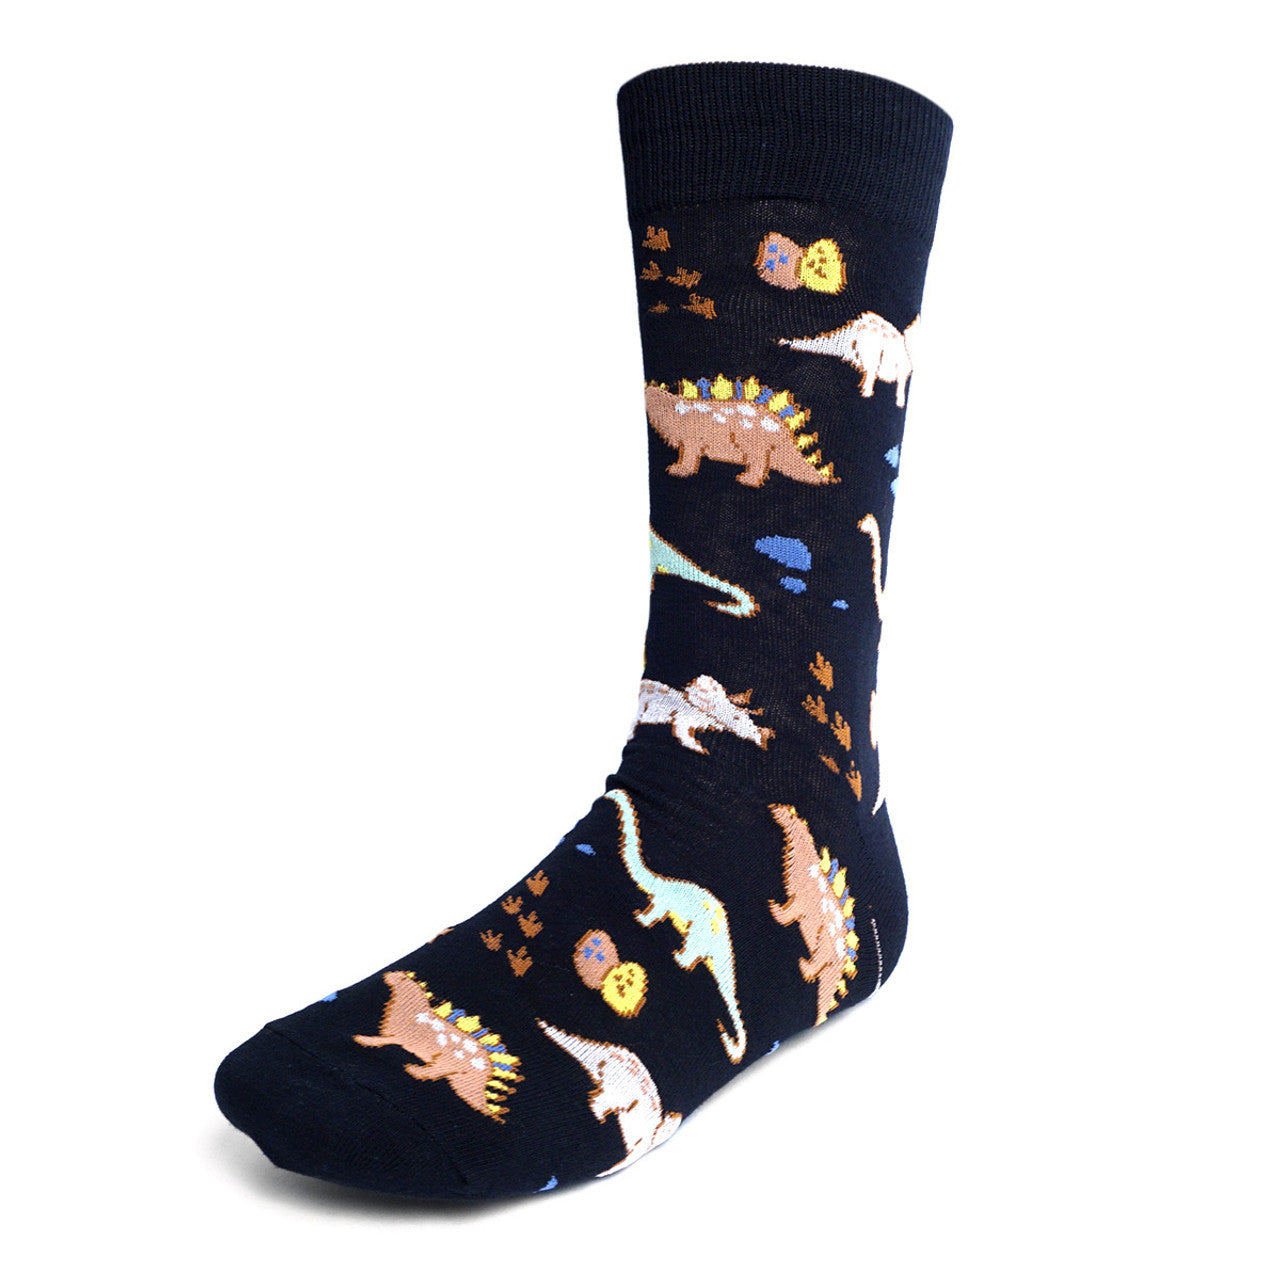 Men's Dinosaur Socks - Navy Blue